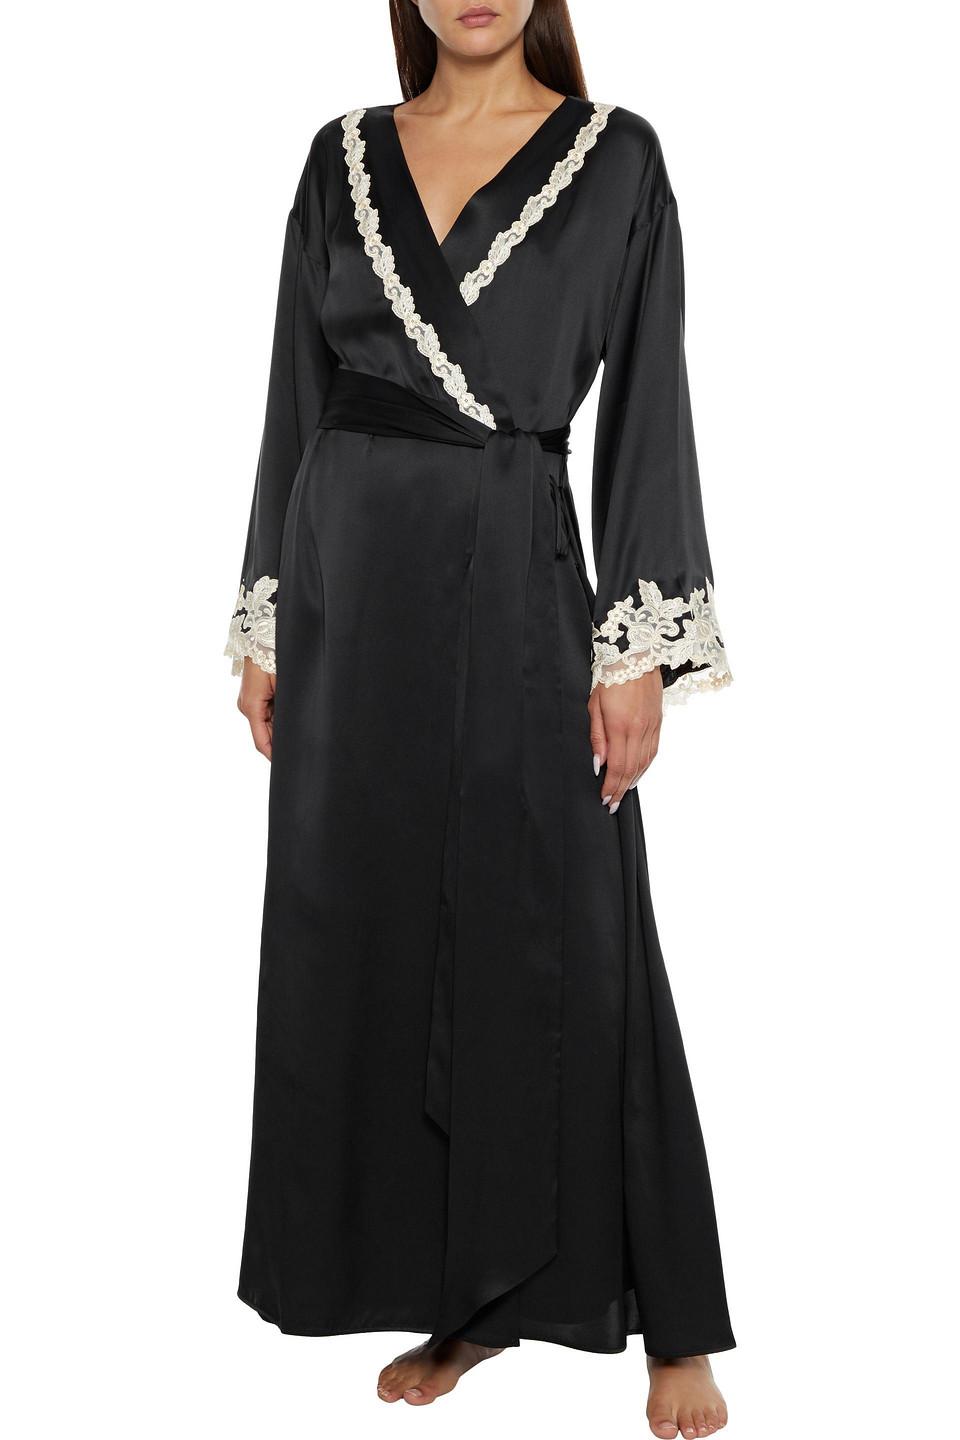 La Perla Maison Classique Lace-trimmed Silk-satin Robe in Black | Lyst